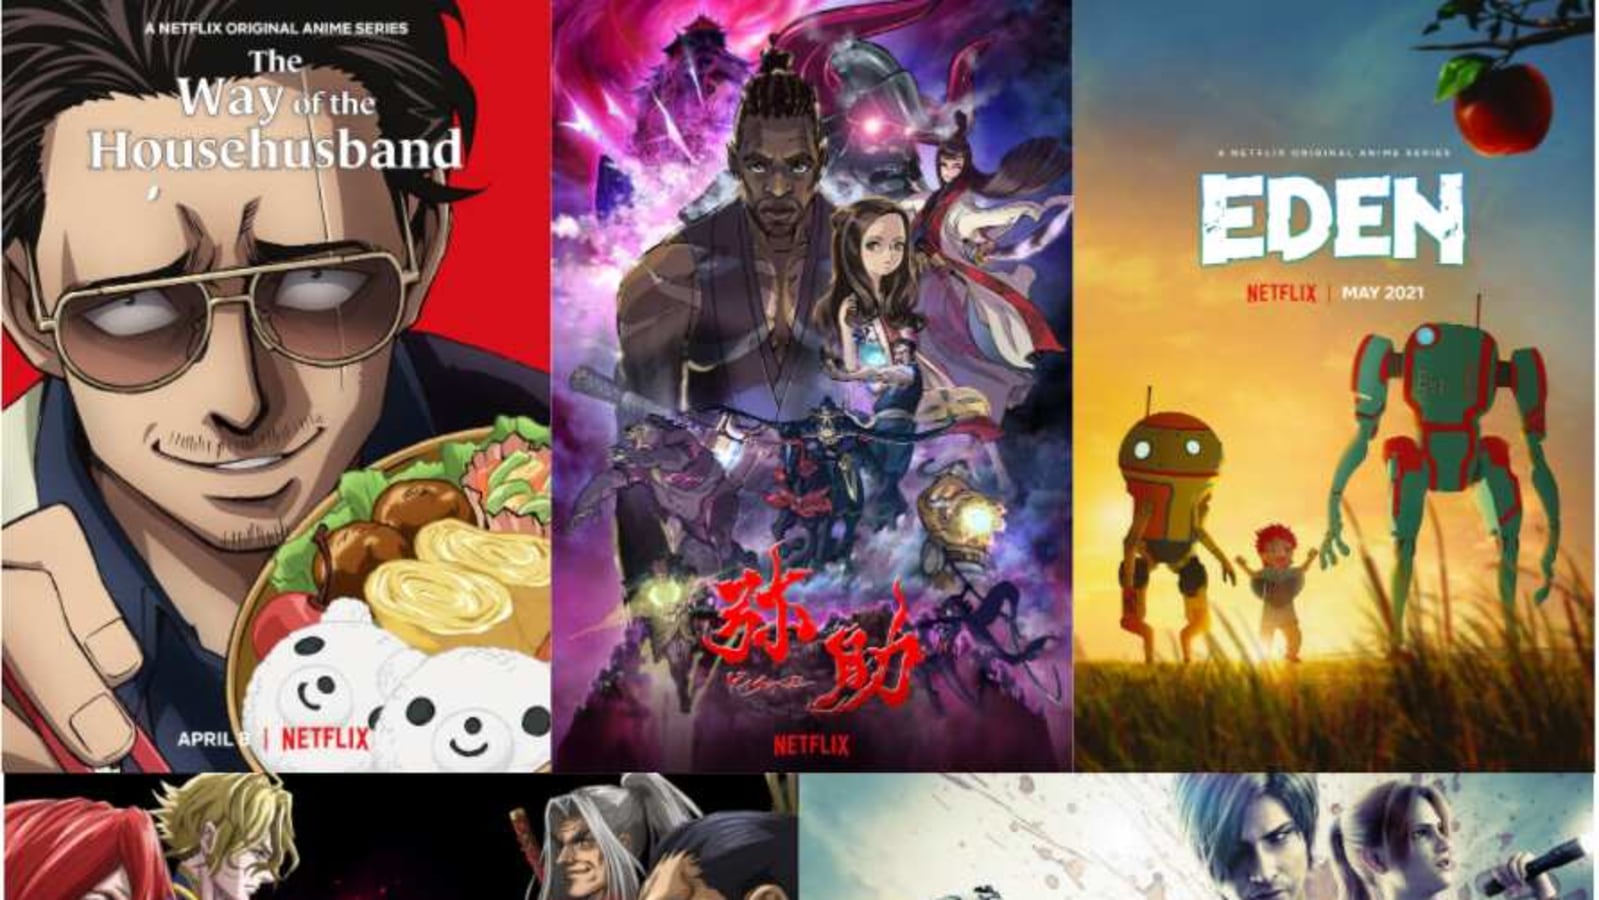 Super7 To Do Toys for EDEN Anime on Netflix